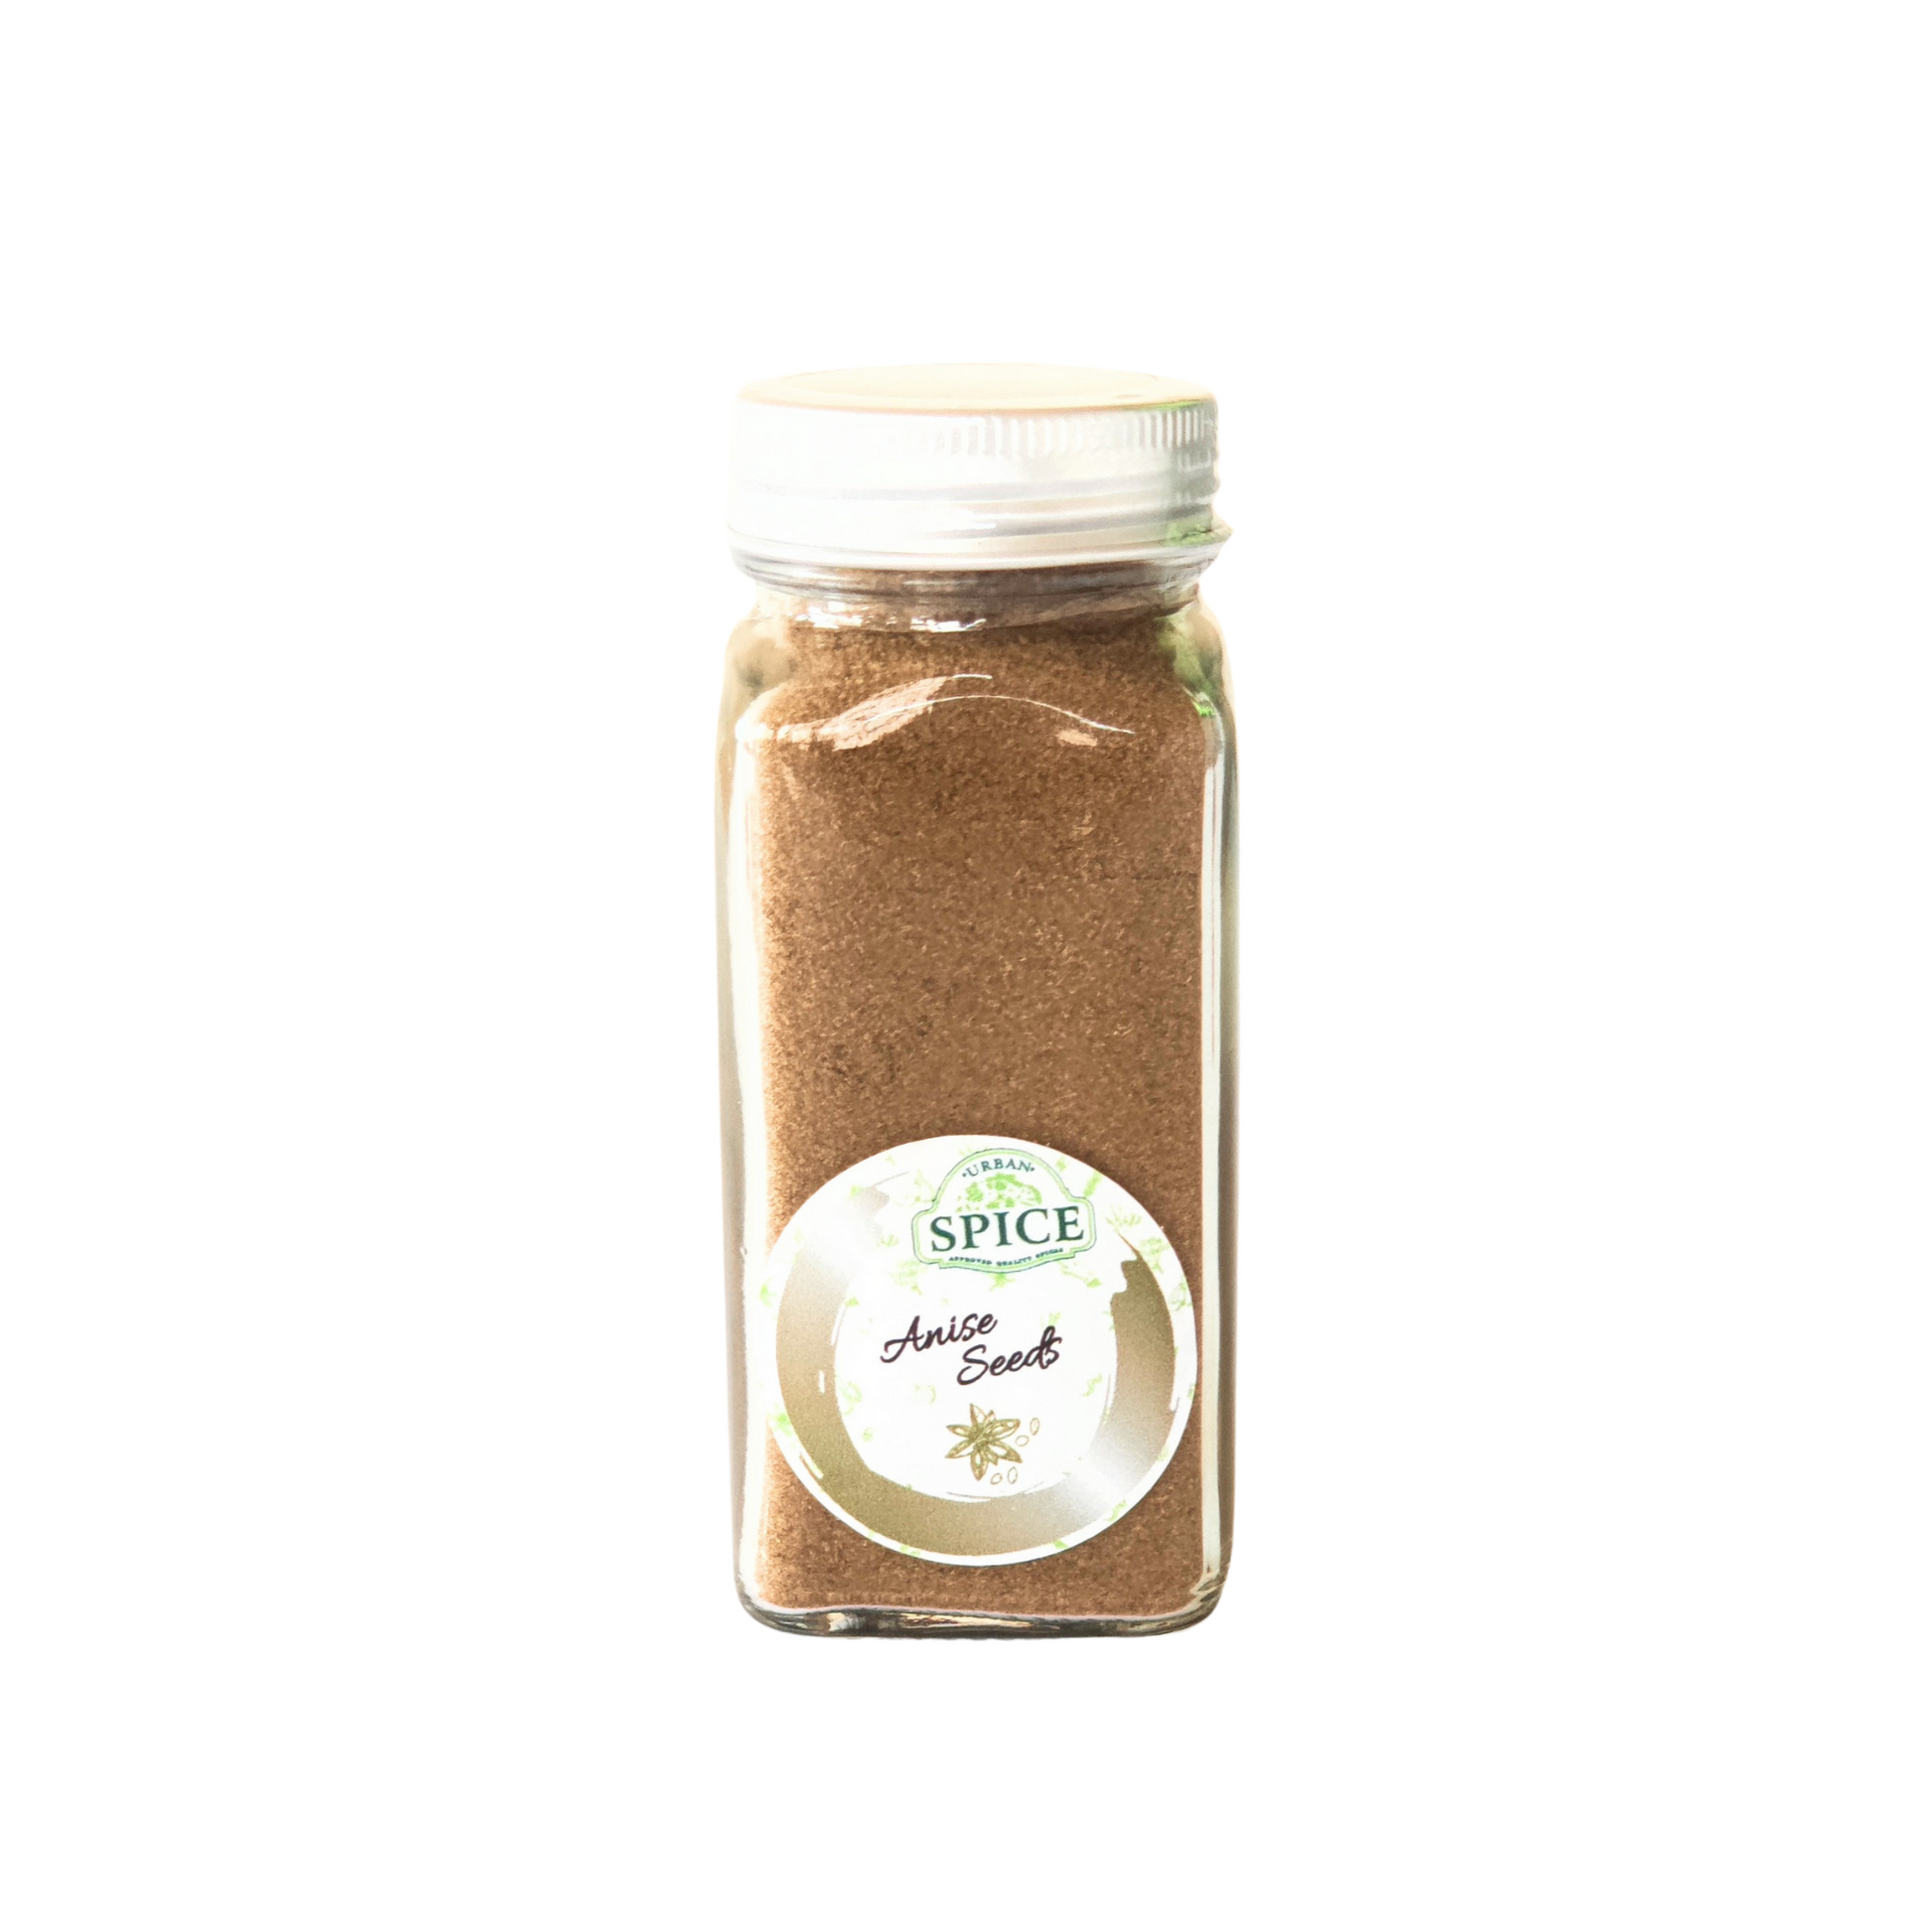 120 gram bottle of urban spice anise seeds